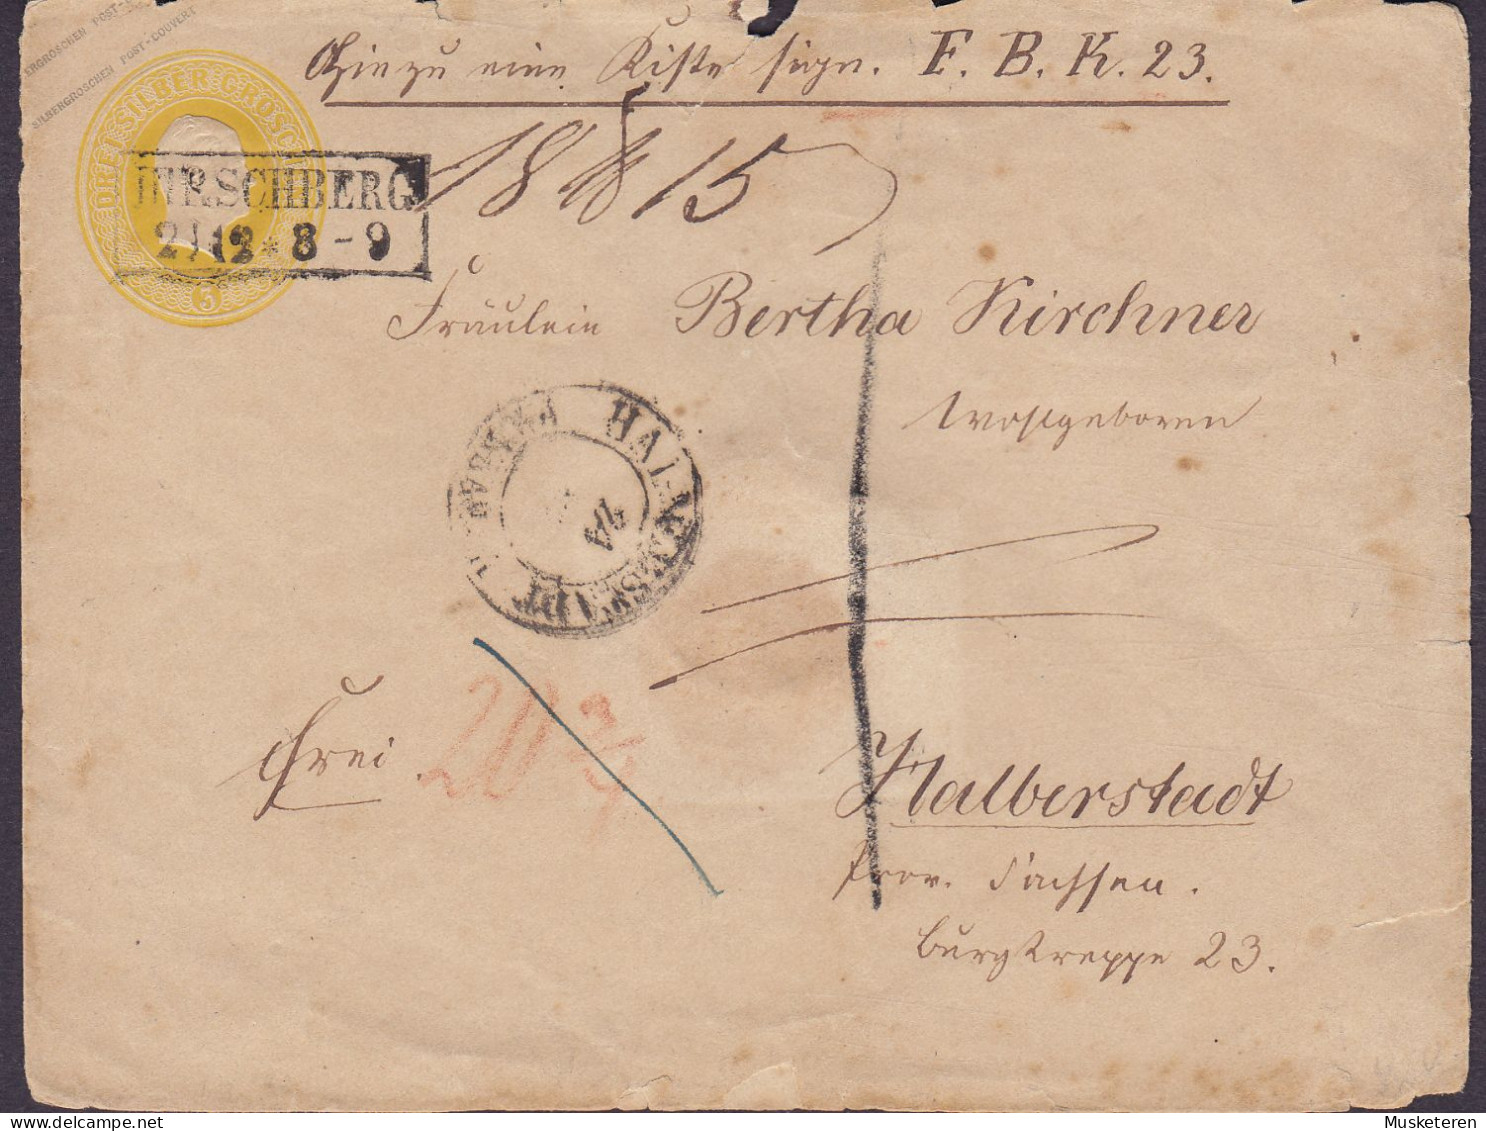 Preussen Postal Stationery Ganzsache 3 SILBER GROSCHEN Boxed HIRSCHBERG 2/12 8-9 Cds. HALBERSTADT (Arr.) Sachsen-Anhalt - Postal  Stationery